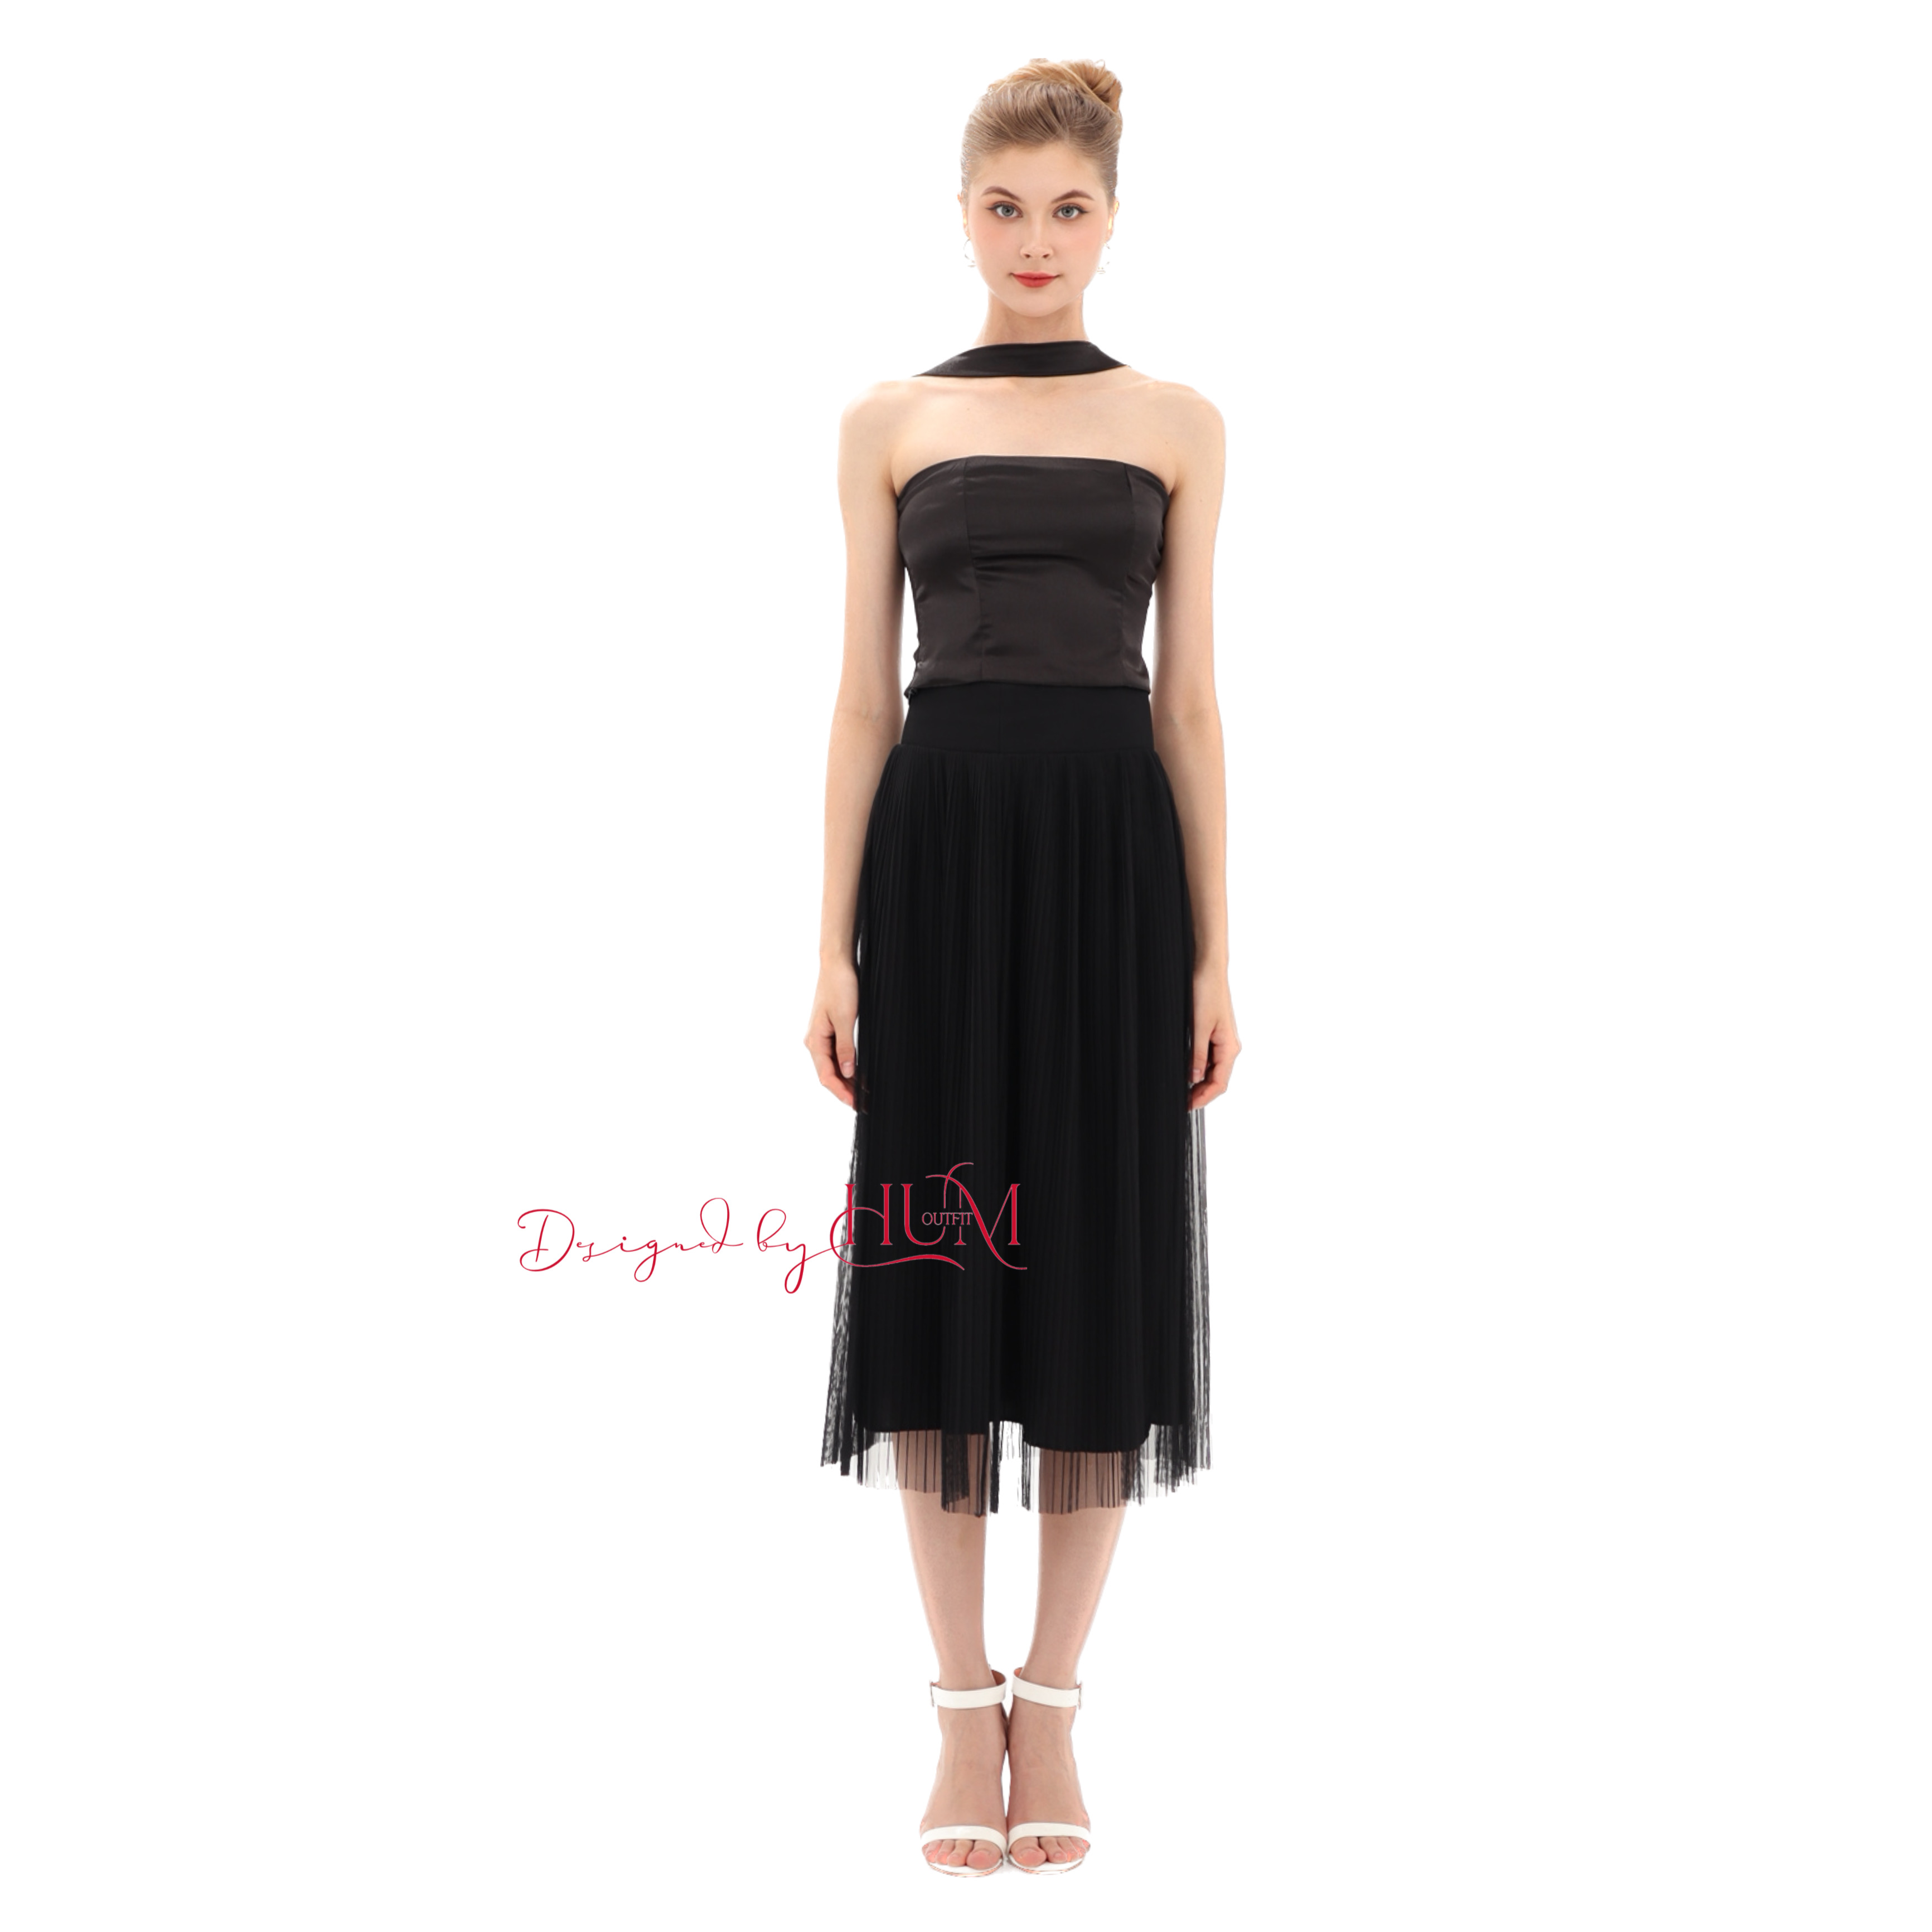 Chân váy Maxy, chân váy dài, xoè nhẹ, 2 lớp lụa lót và lưới, form đứng thời trang, tôn dáng, màu đen - V01D